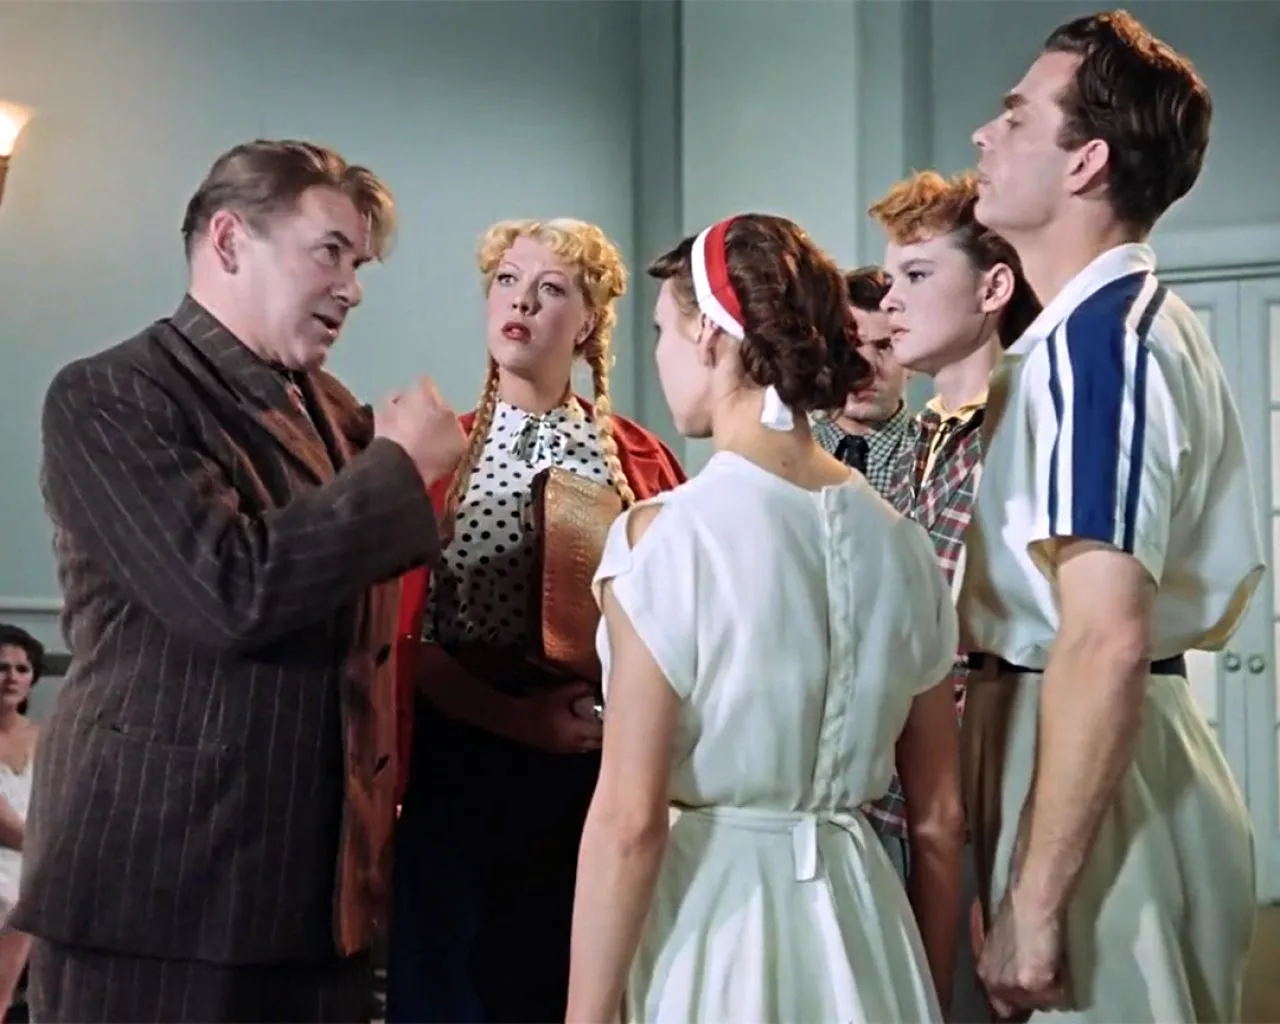 Карнавальная ночь (комедия, реж. Эльдар Рязанов, 1956 г.)